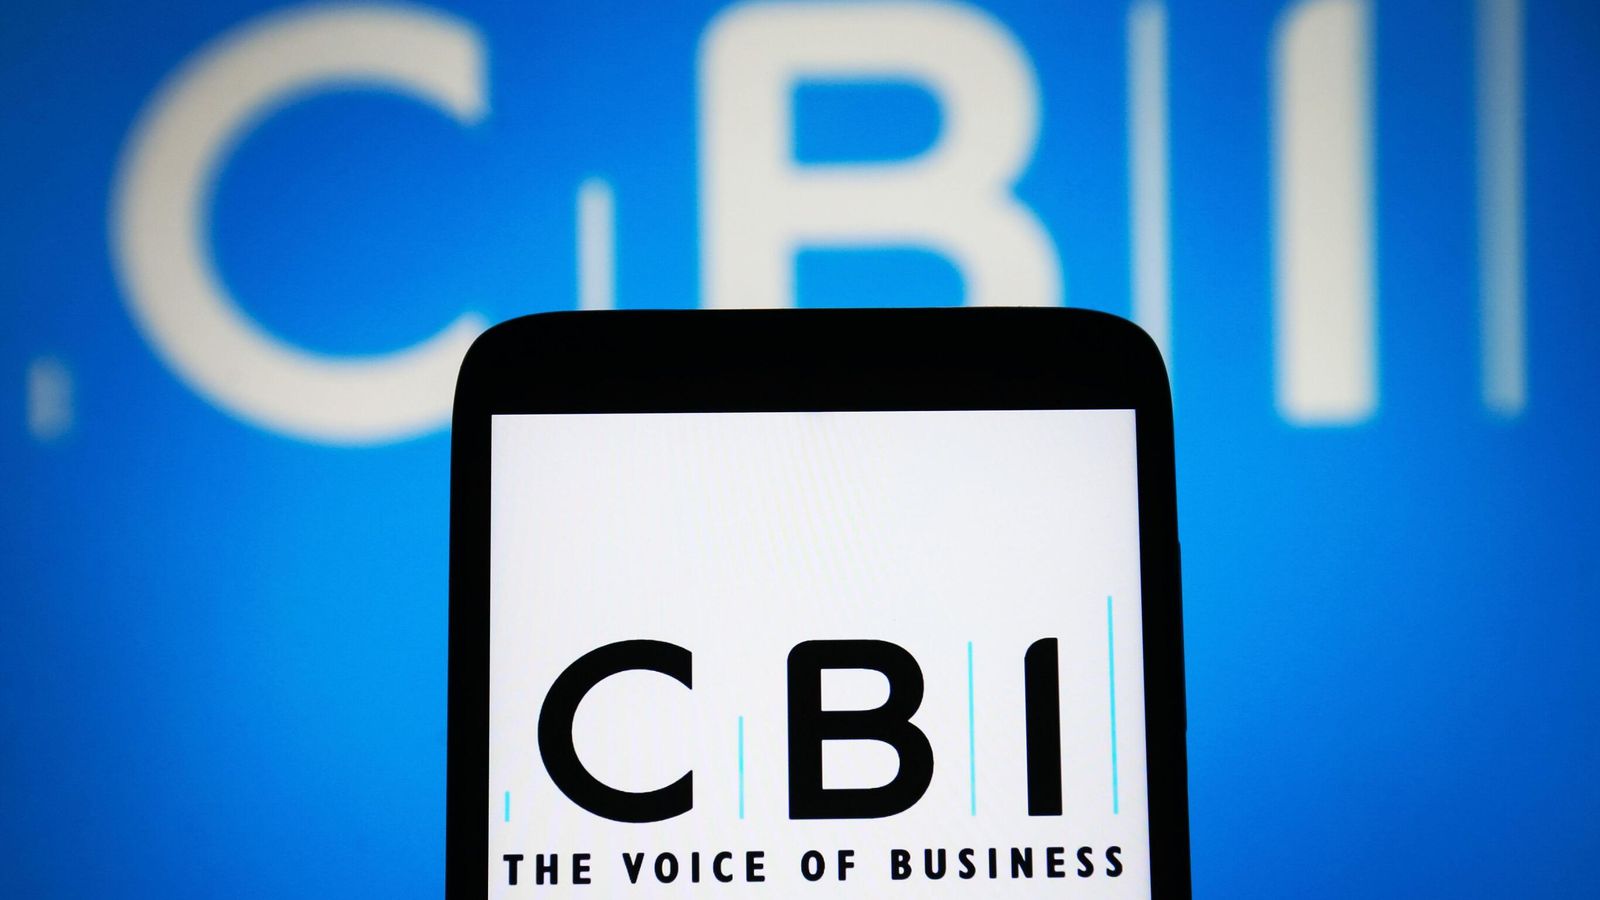 CBI съкращава повече работни места на фона на битка за връщане на корпоративни членове